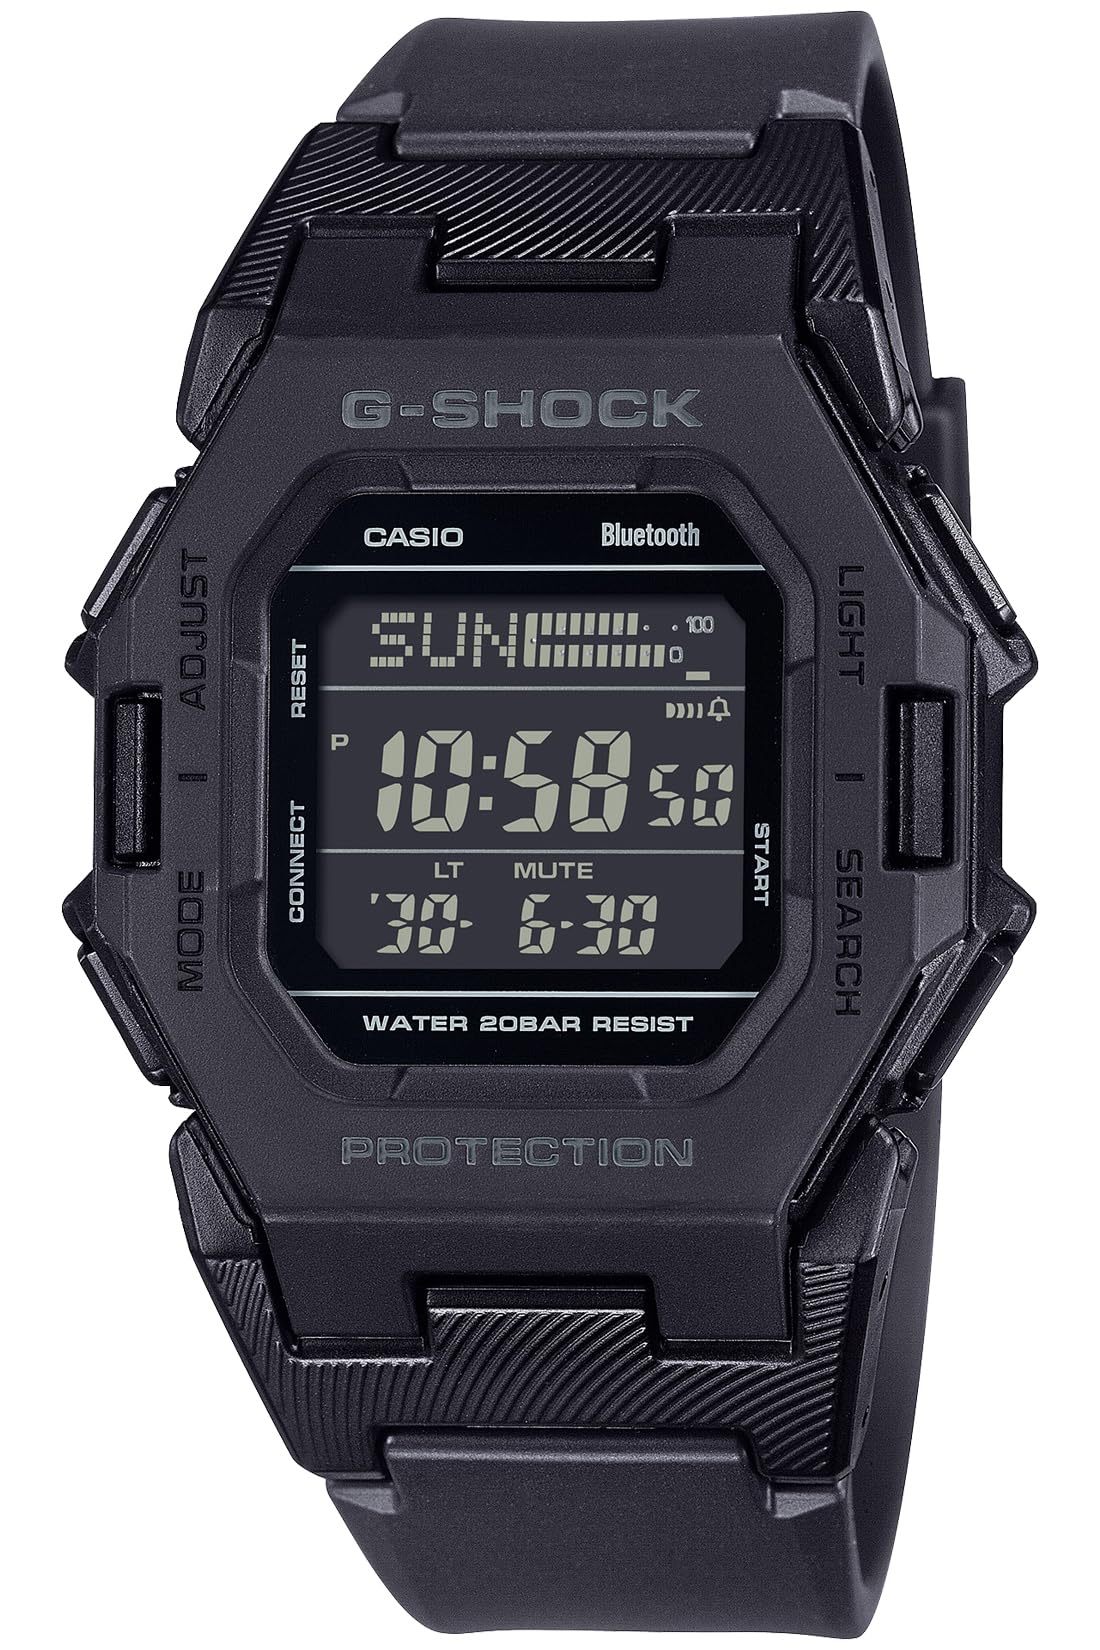 ジーショック [カシオ] 腕時計 【国内正規品】Bluetooth搭載 歩数計測機能 GD-B500-1JF メンズ ブラック - BanzaiHobby